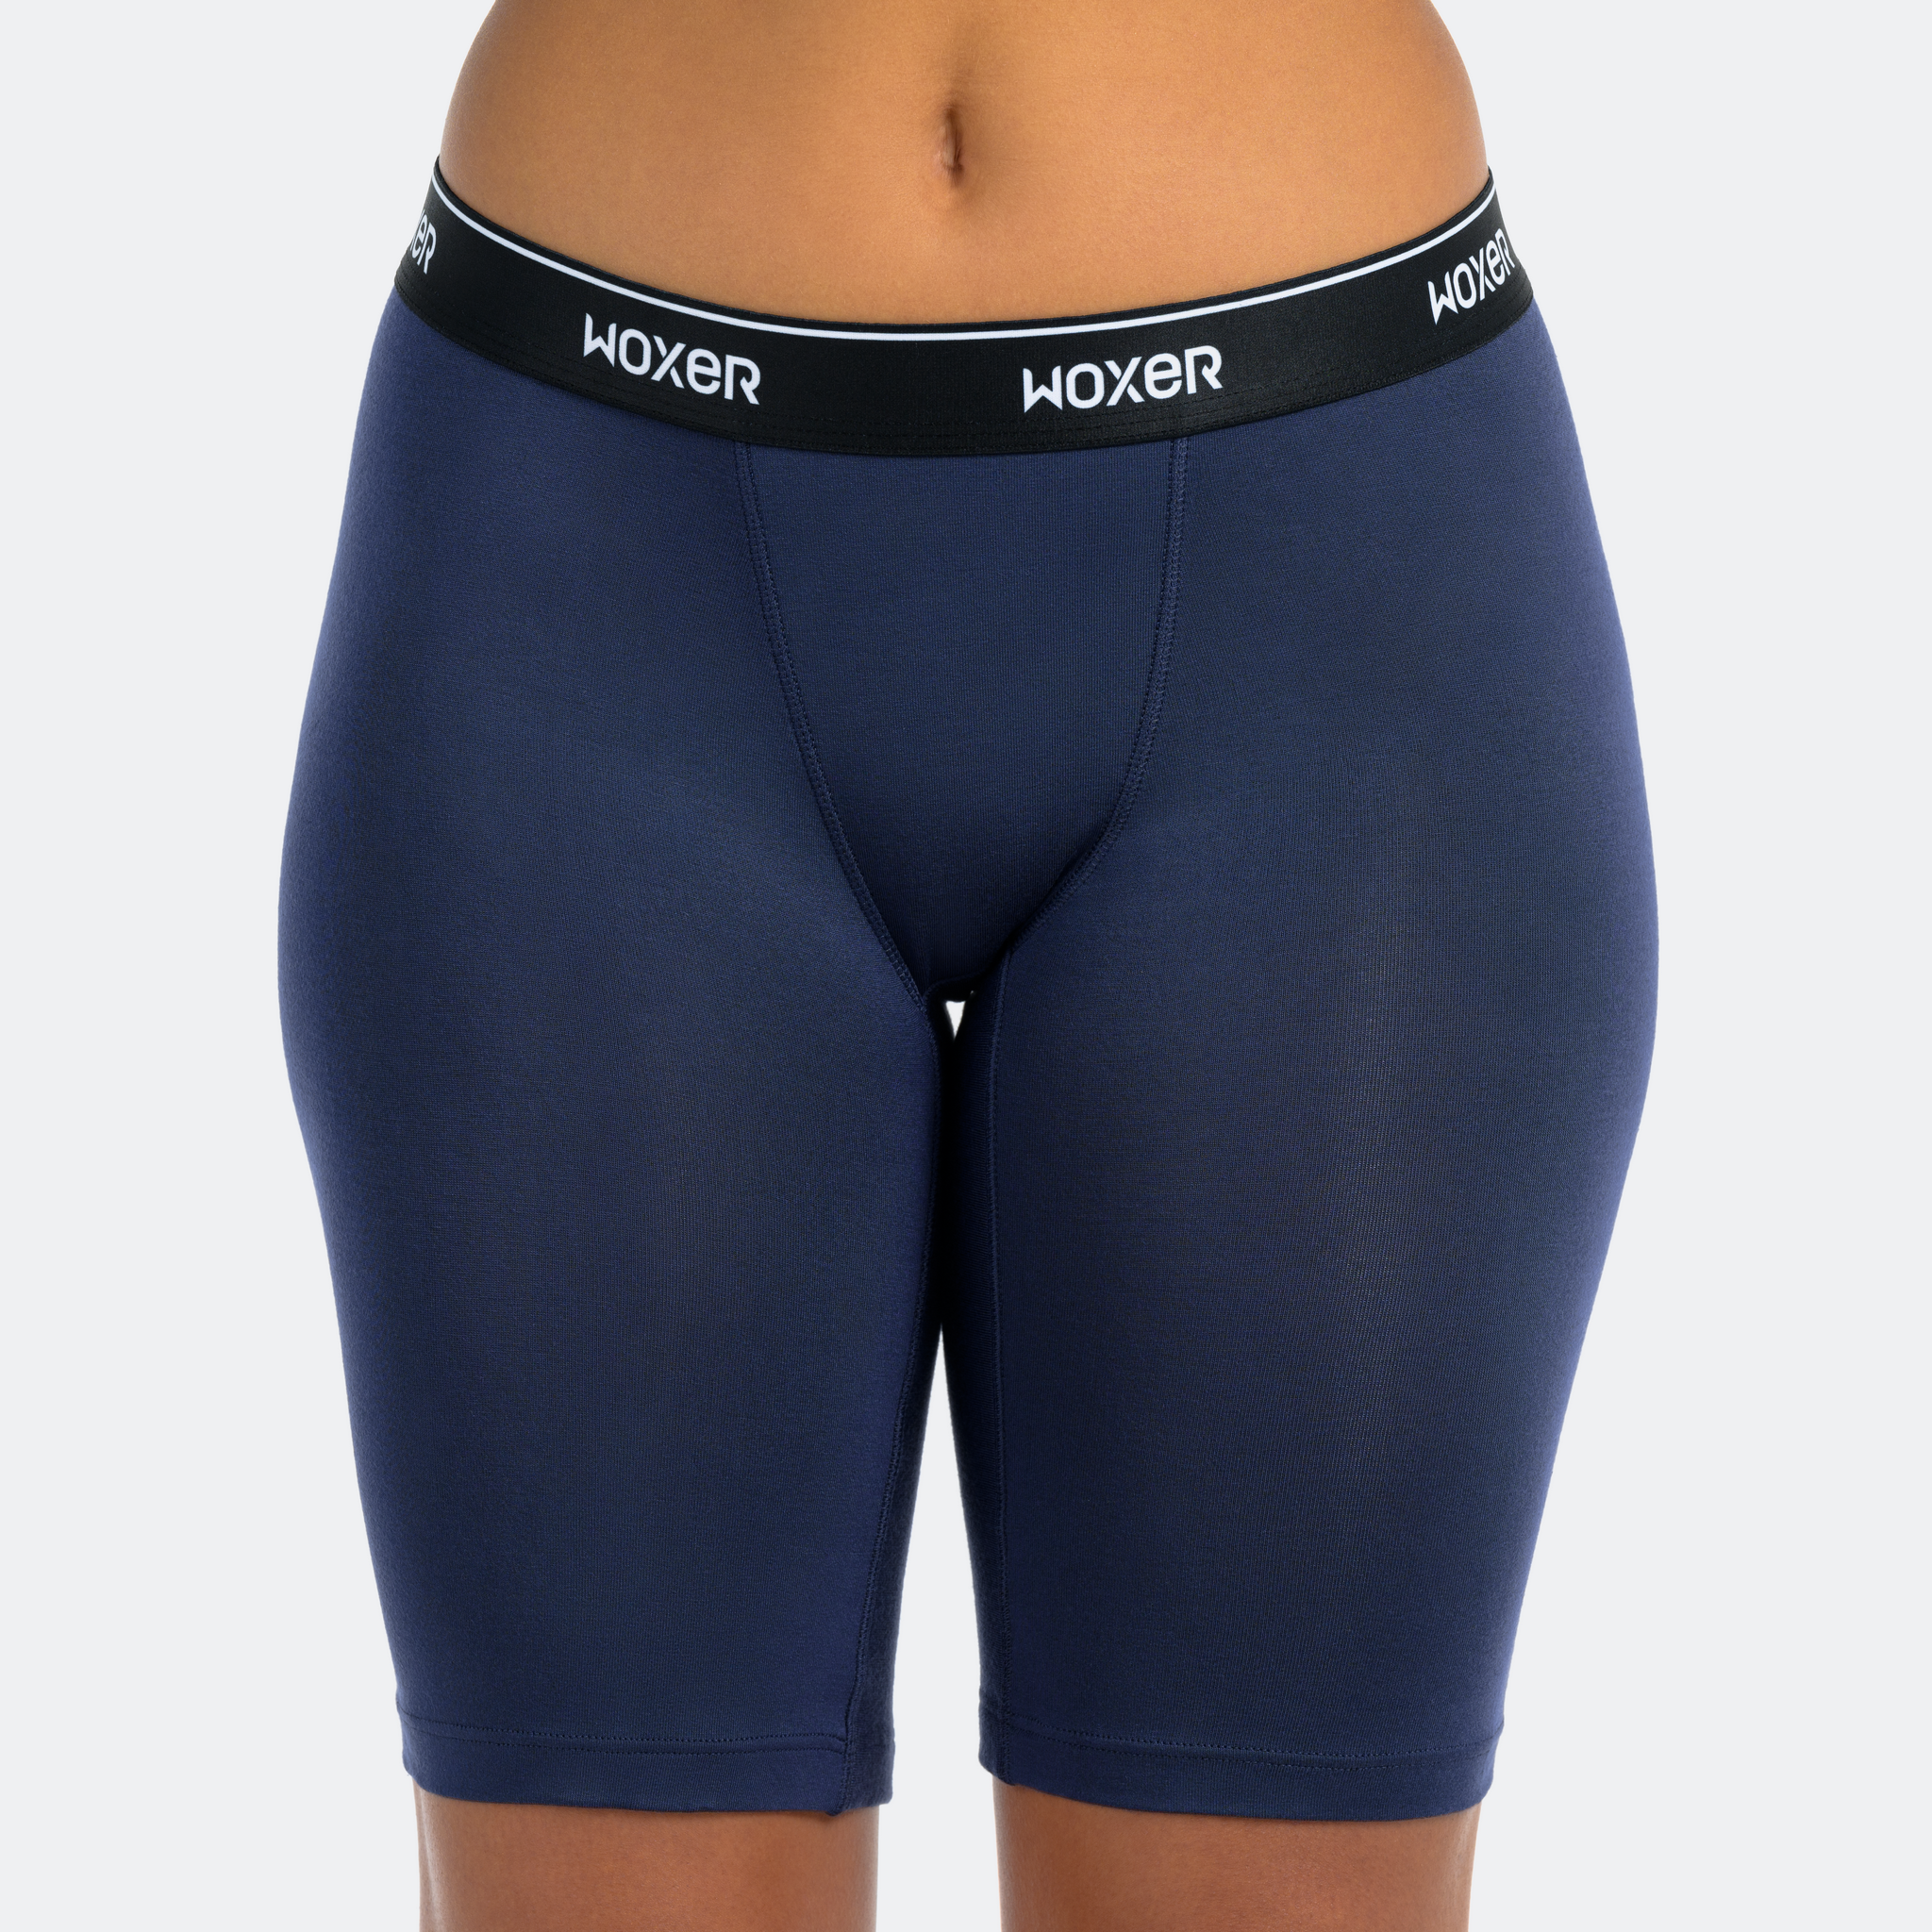 Woxer Womenilitis Boxer Briefs Underwear, Biker 9” Boyshorts